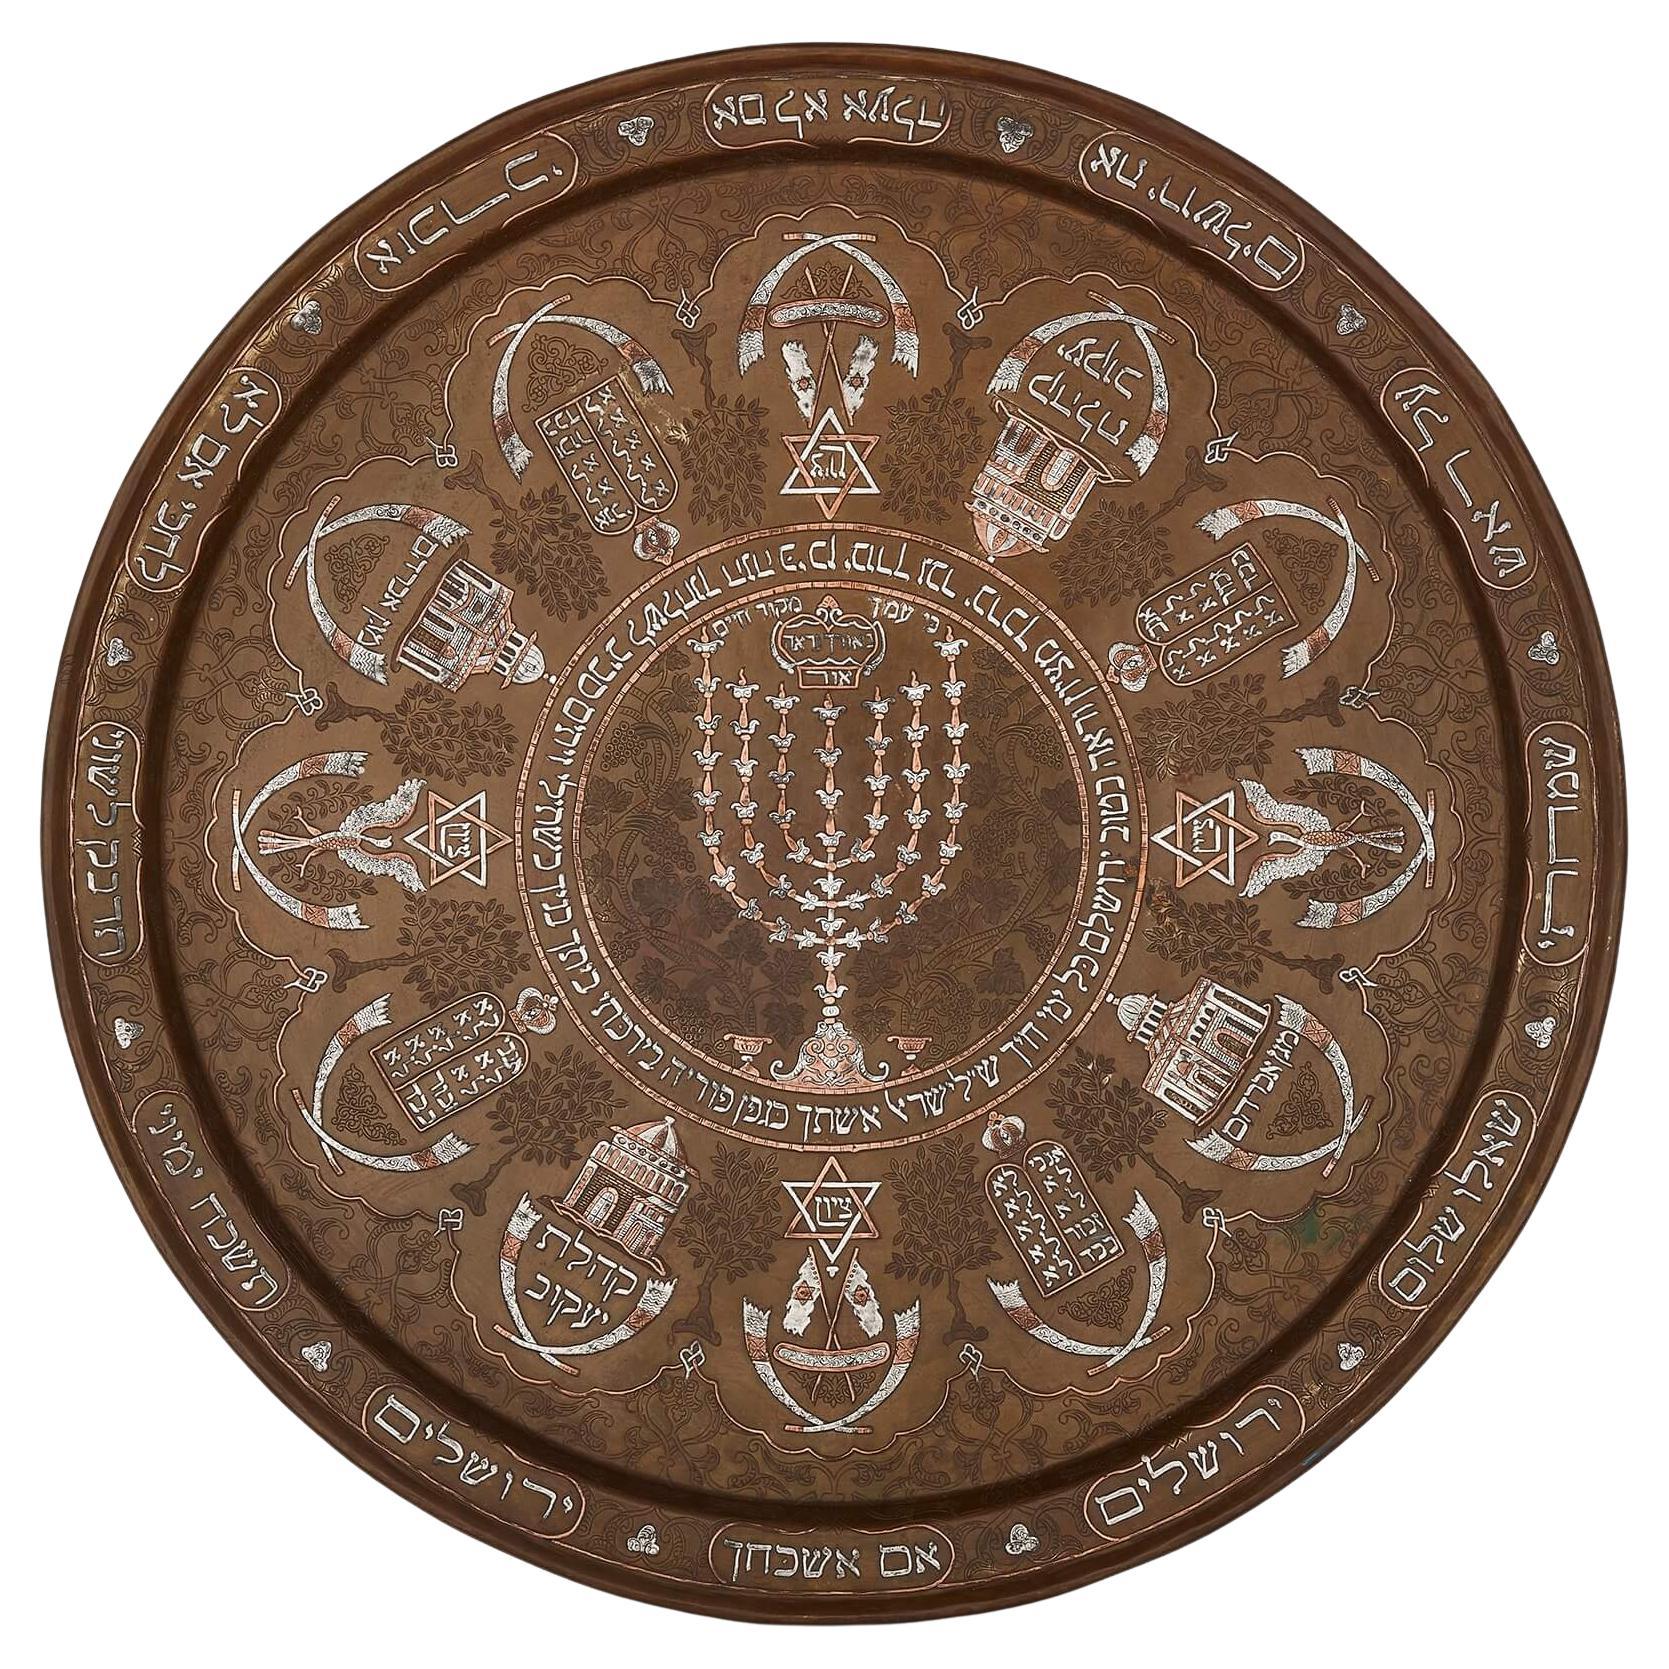 Antikes Judaica-Tablett mit silberner Intarsienarbeit, sehr selten